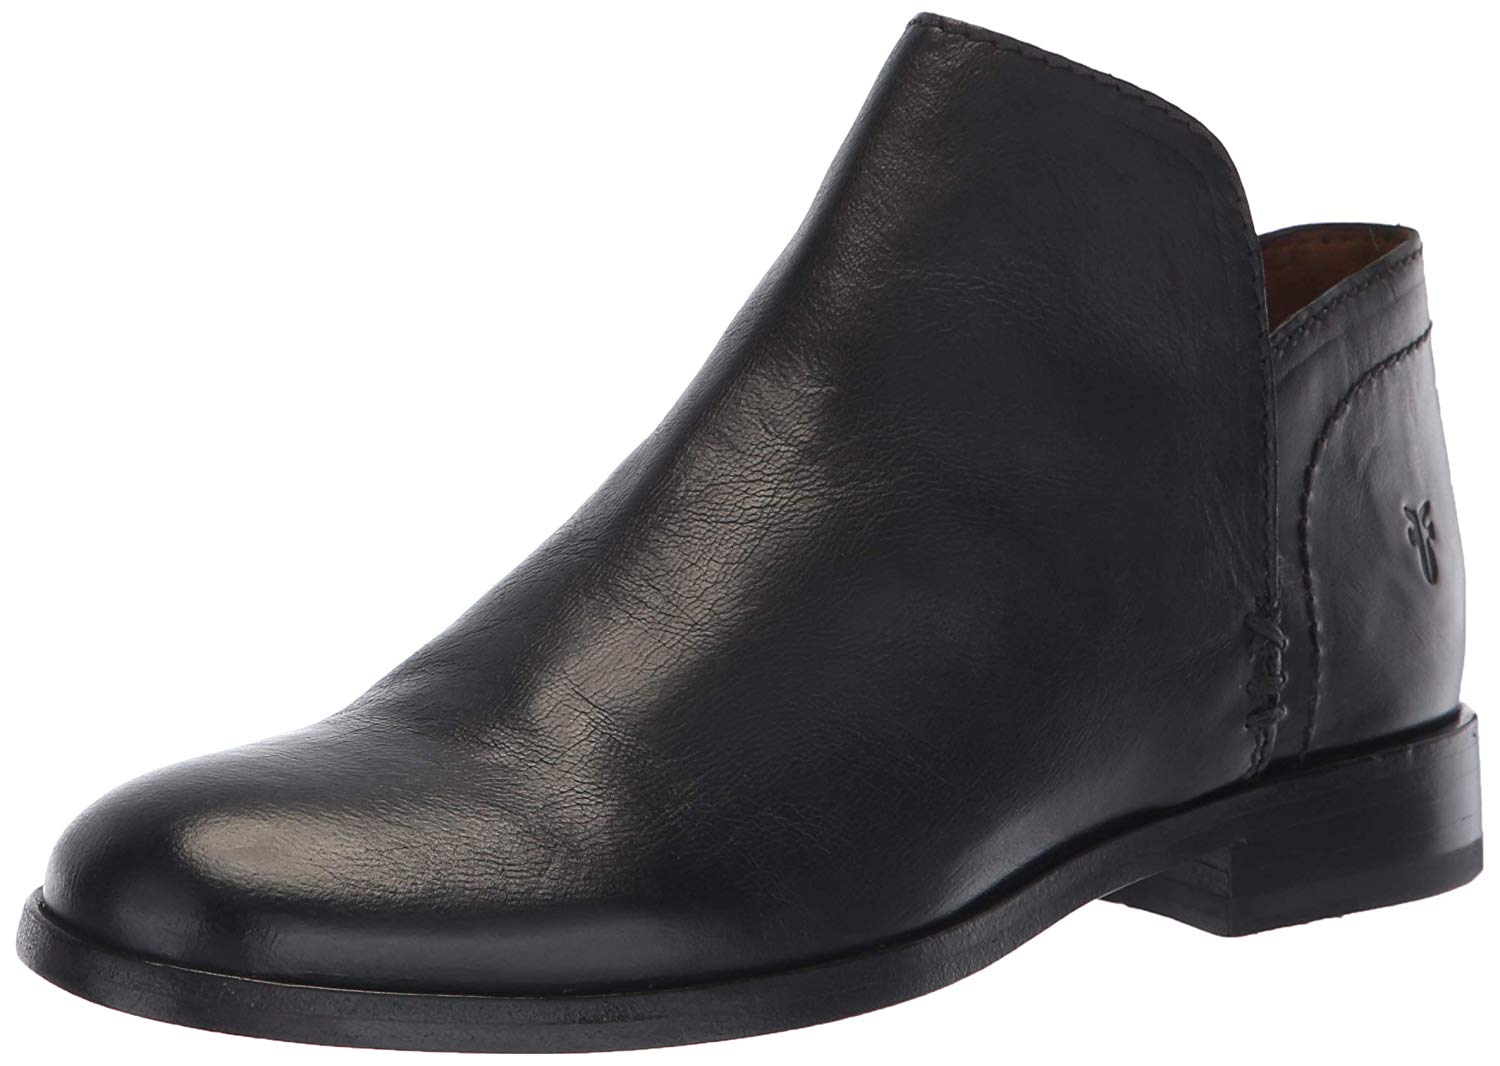 FRYE Women's Elyssa Shootie Ankle Boot, Black, Size 7.0 7EFR | eBay